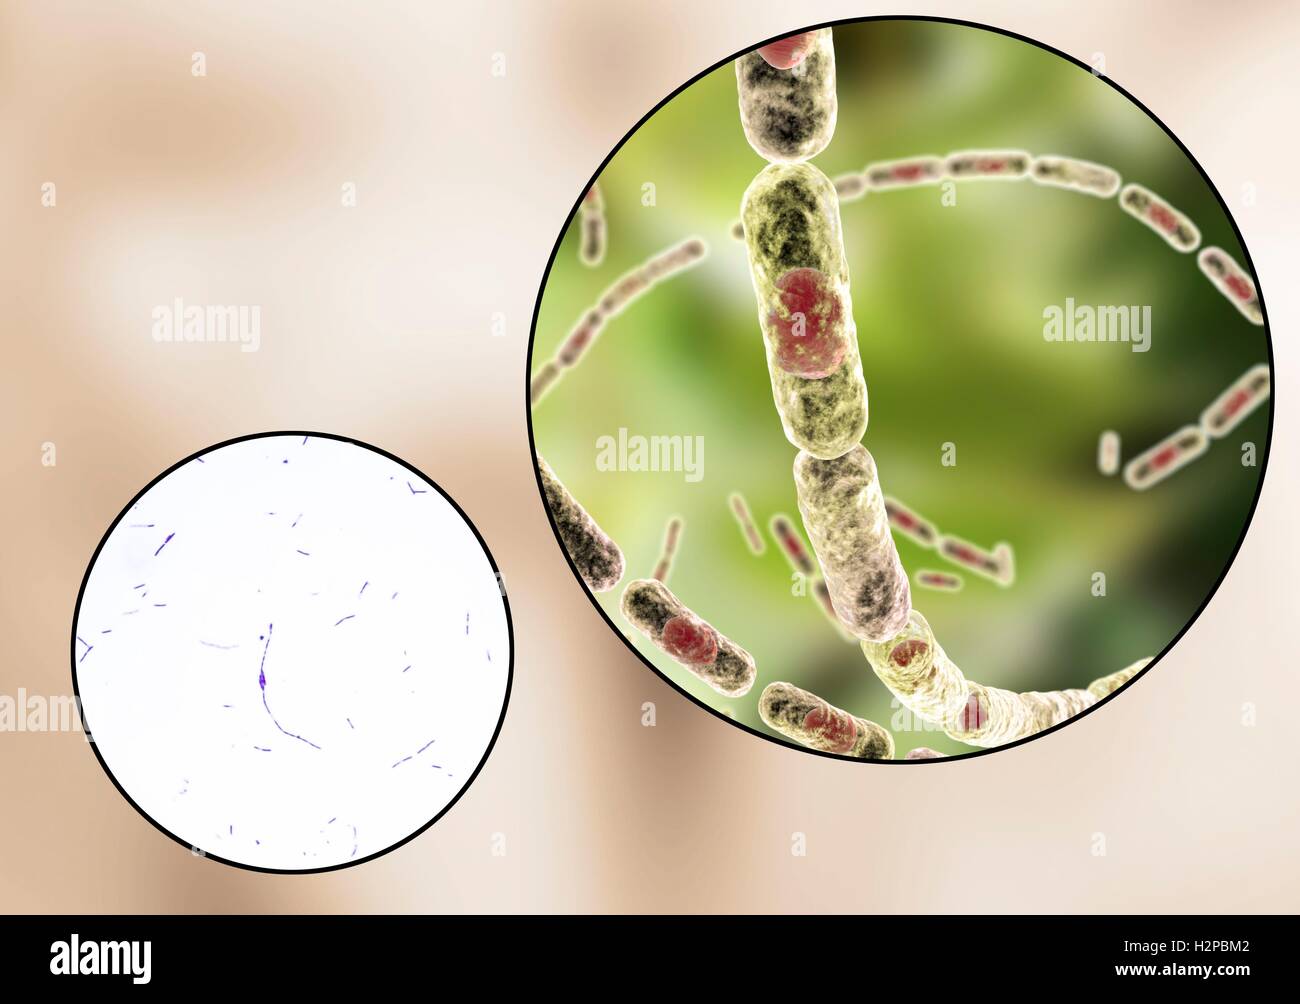 Milzbrandbakterien, leichte Schliffbild und Computer Illustration. Anthrax-Bakterien (Bacillus Anthracis) sind die Ursache für die Krankheit Milzbrand bei Mensch und Vieh. Sie sind grampositive Spore-produzierenden Bakterien, die in Ketten (Streptobacilli) angeordnet. Viele Zellen haben eine zentrale Spore (rot). Stockfoto